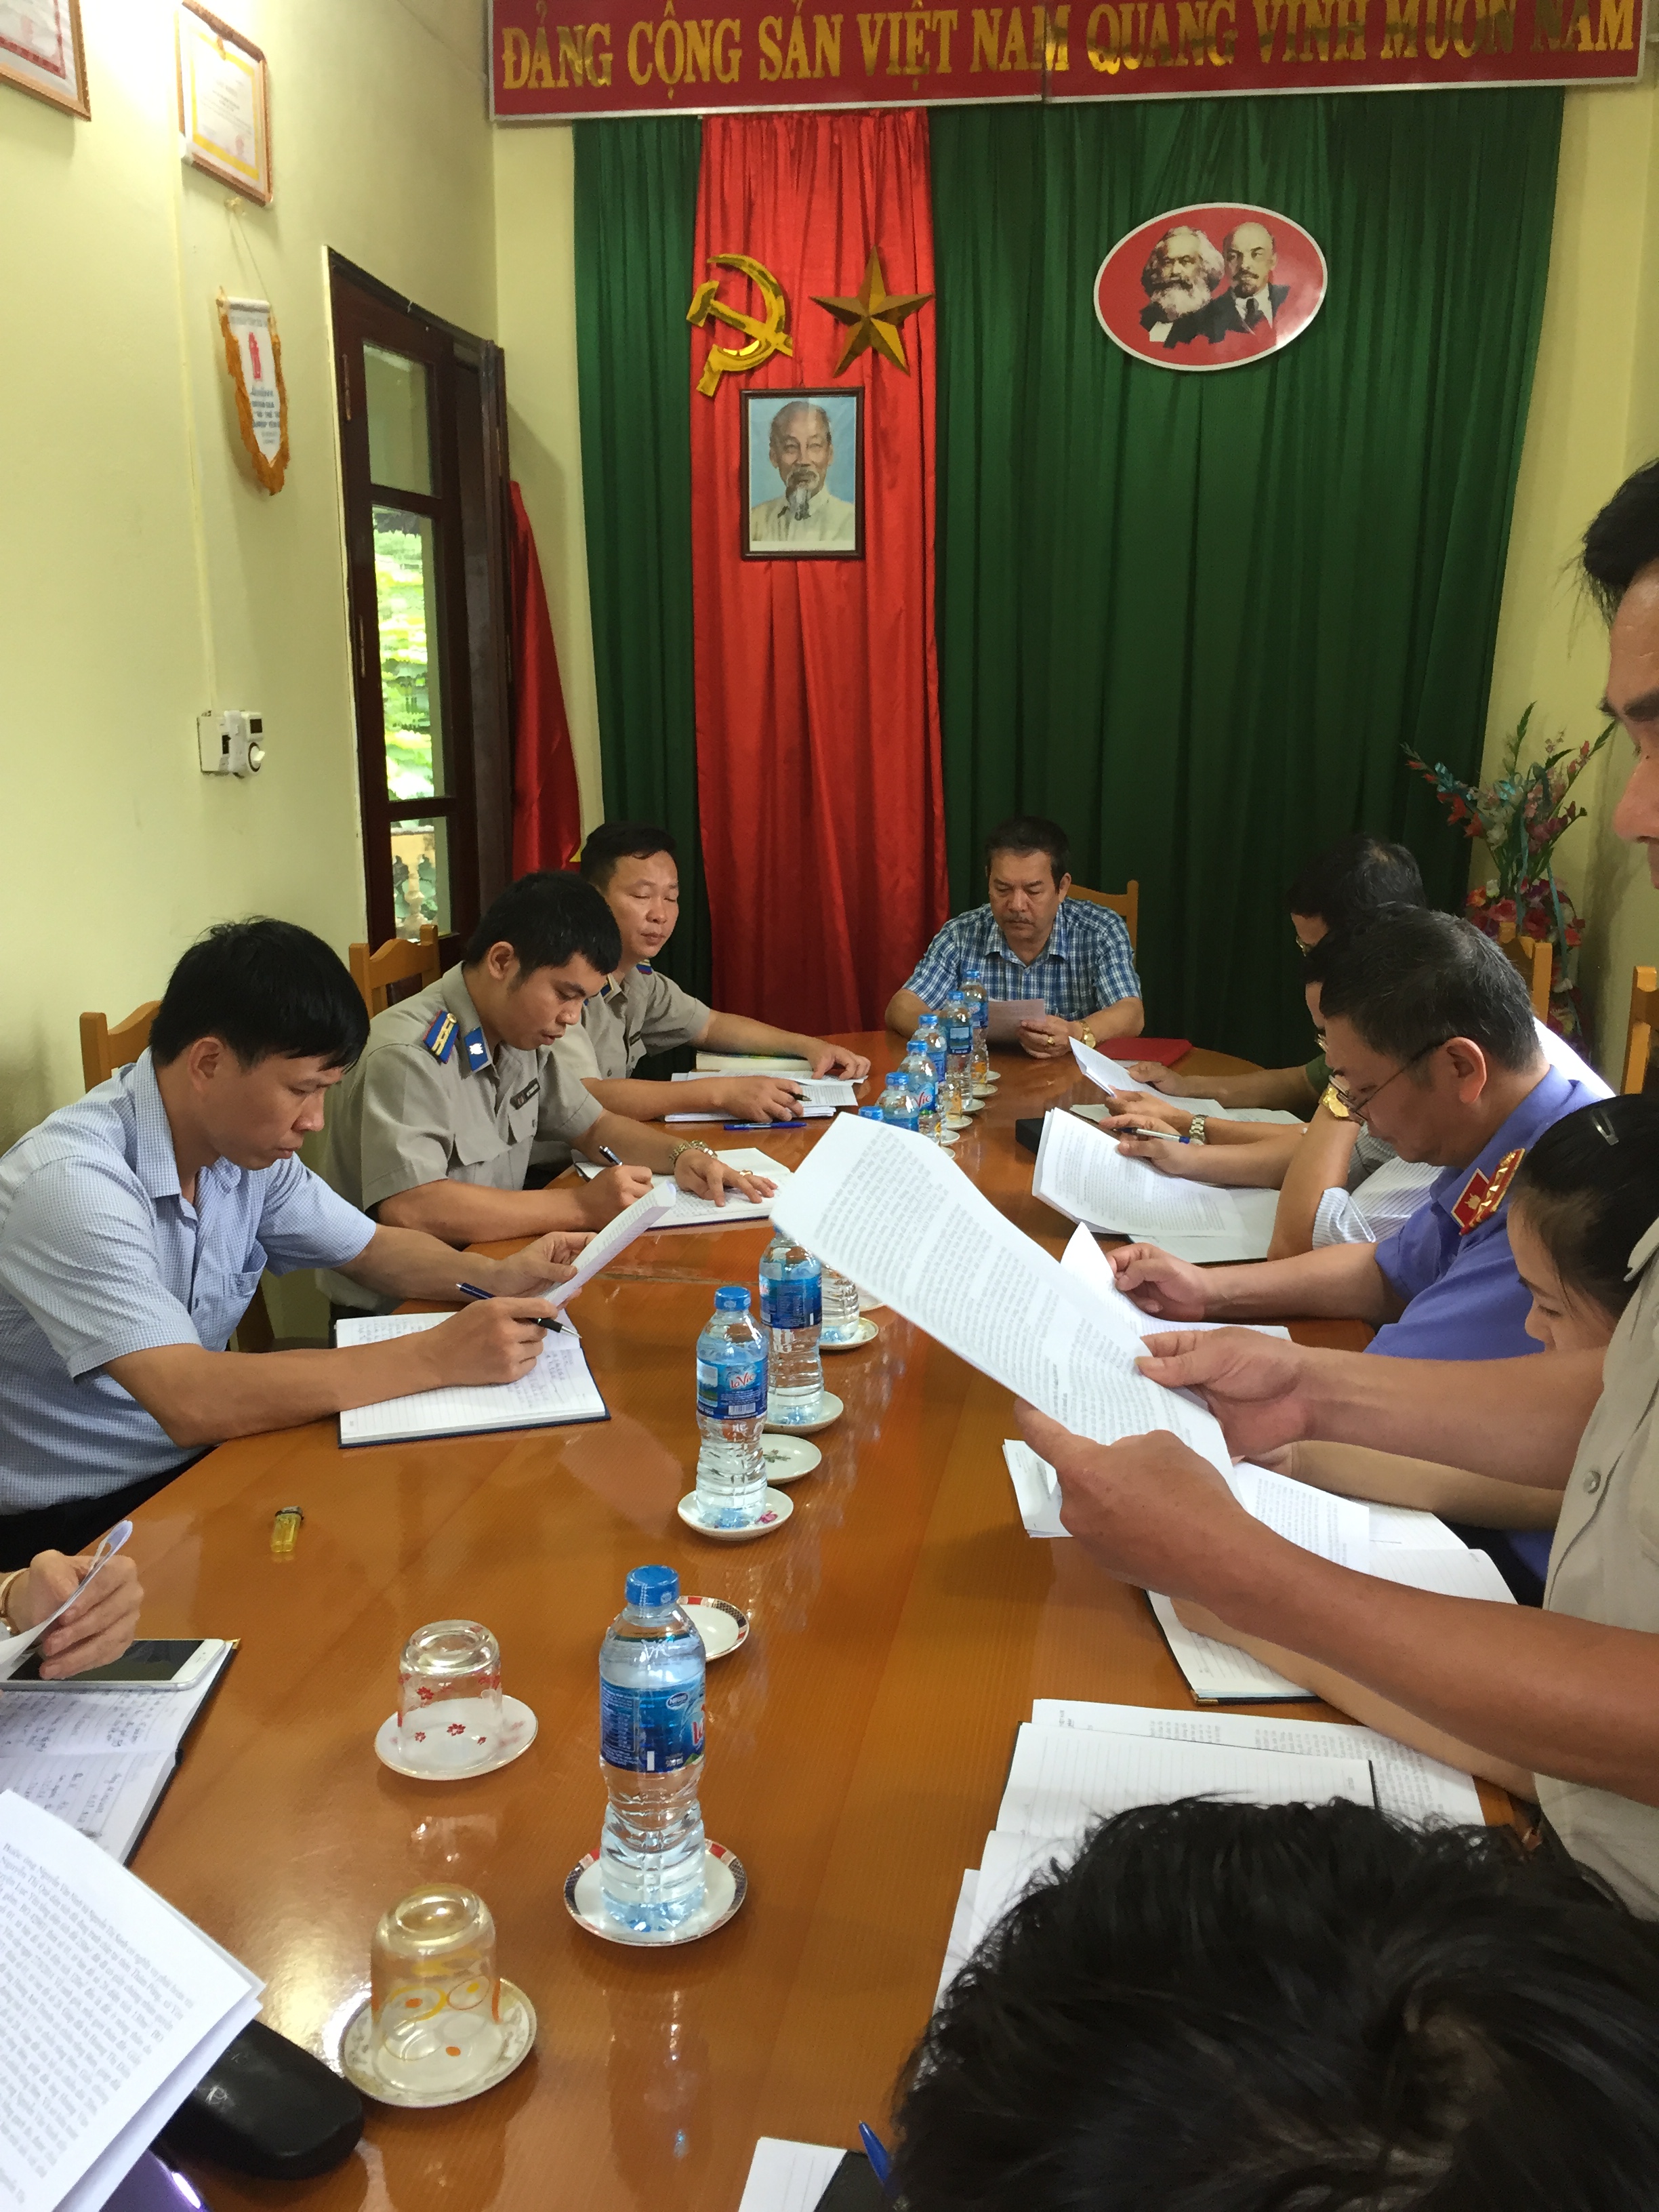 Hiệu quả hoạt động của Ban chỉ đạo Thi hành án dân sự huyện Lục Yên